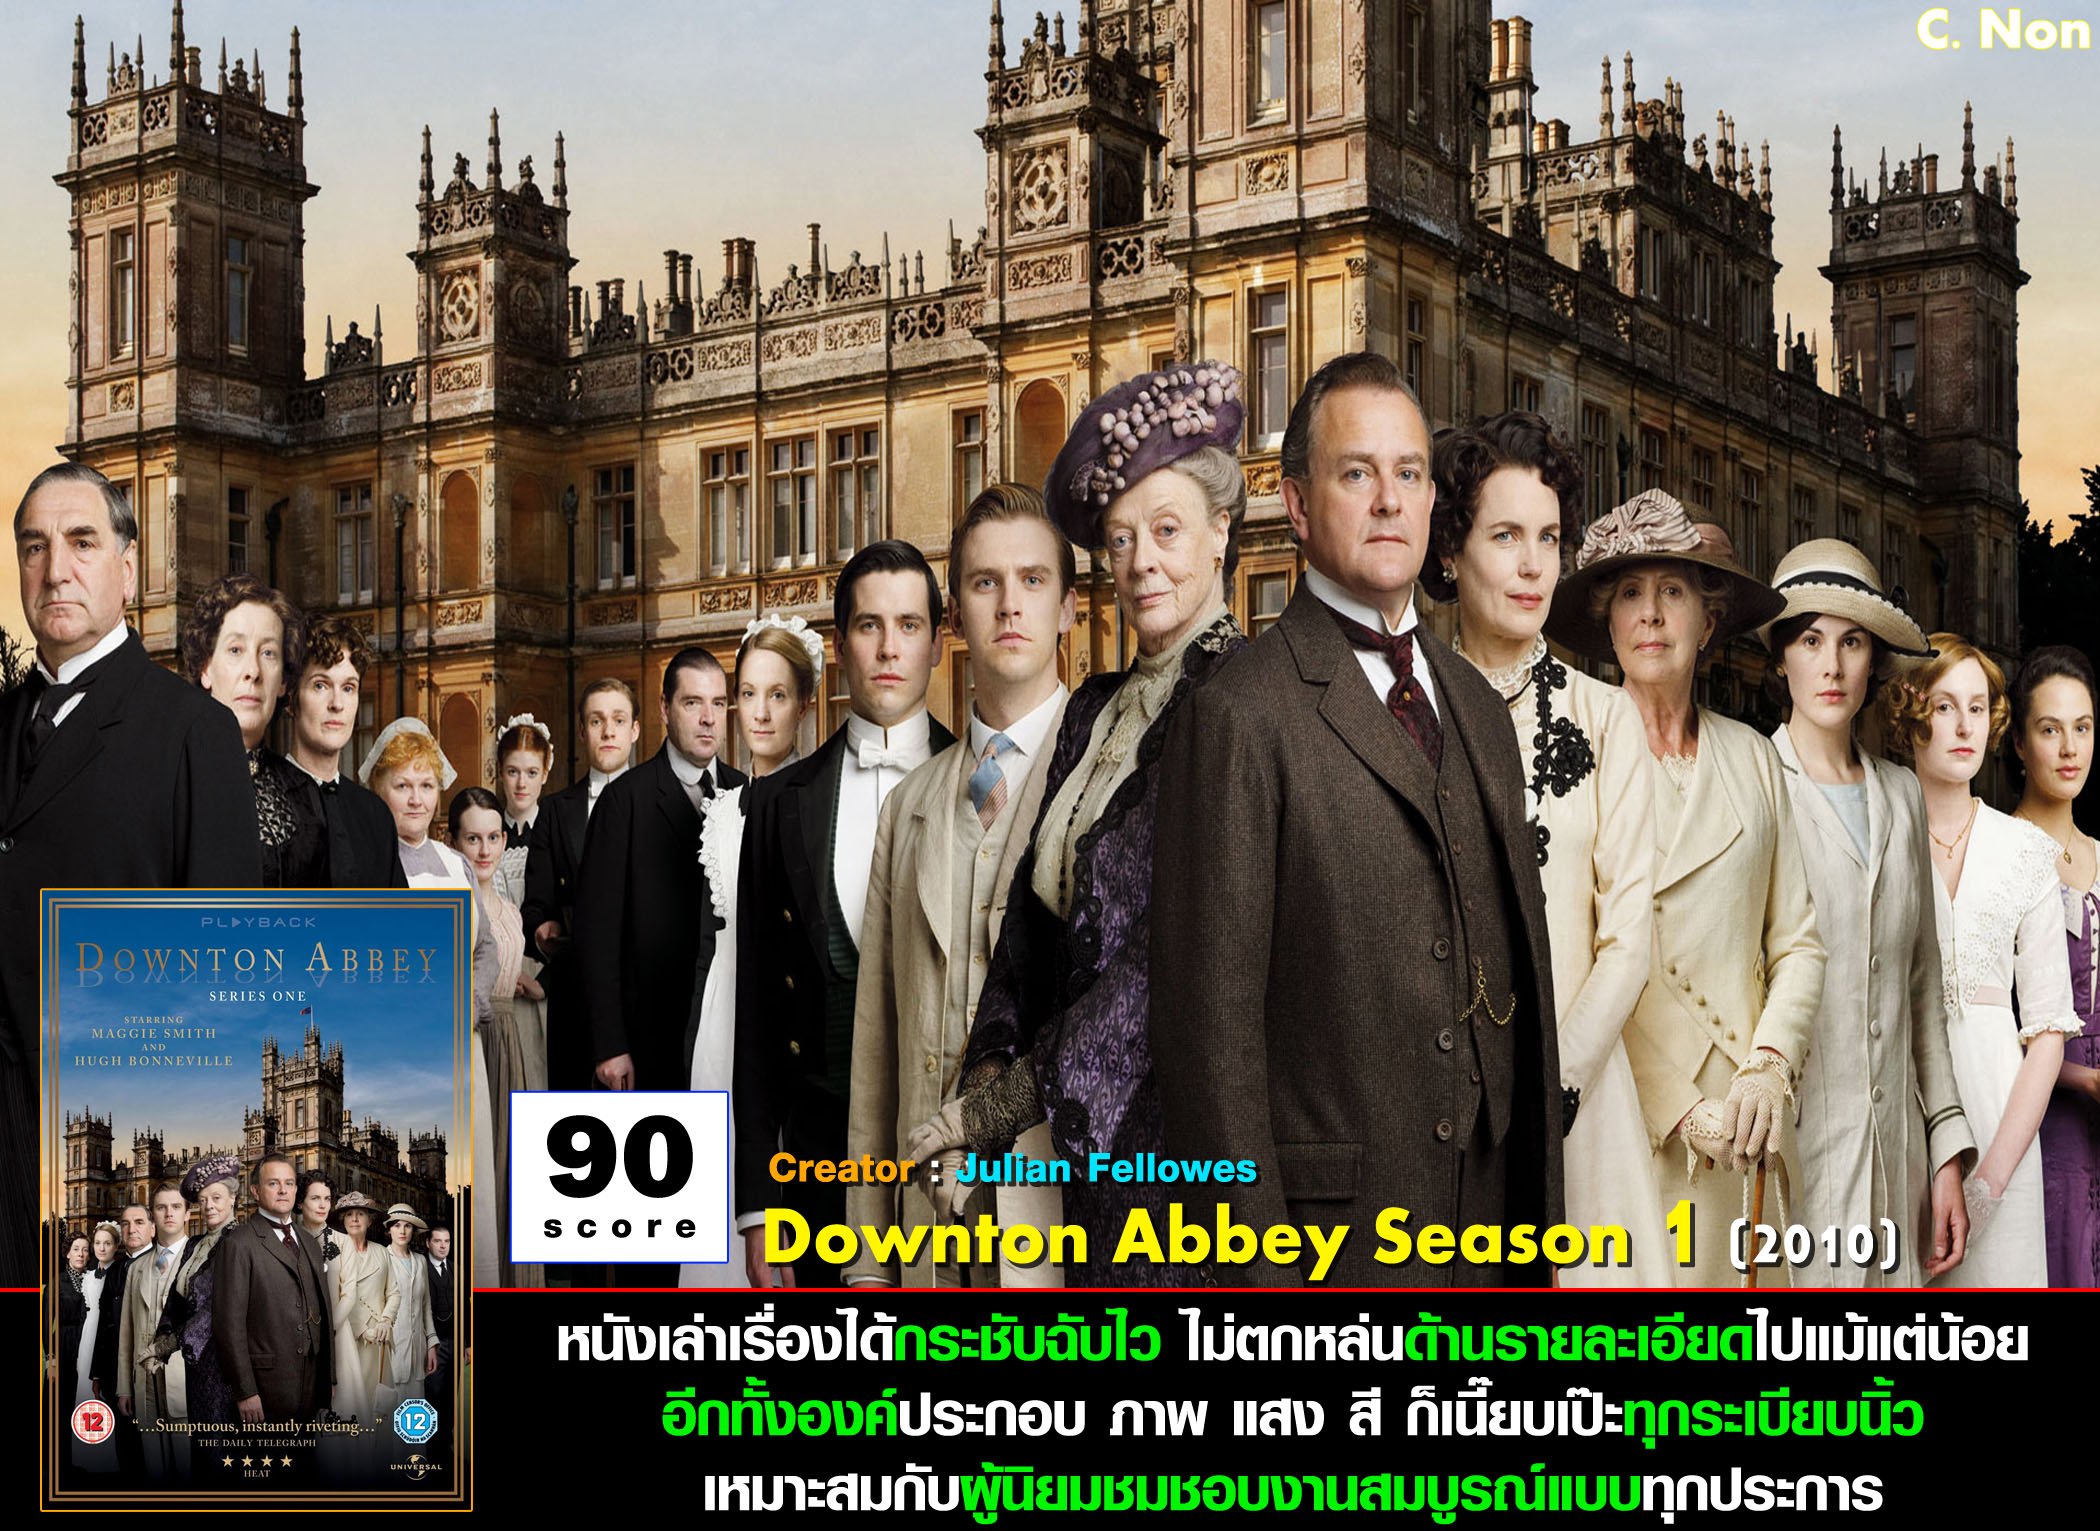 downton abbey free download season 1